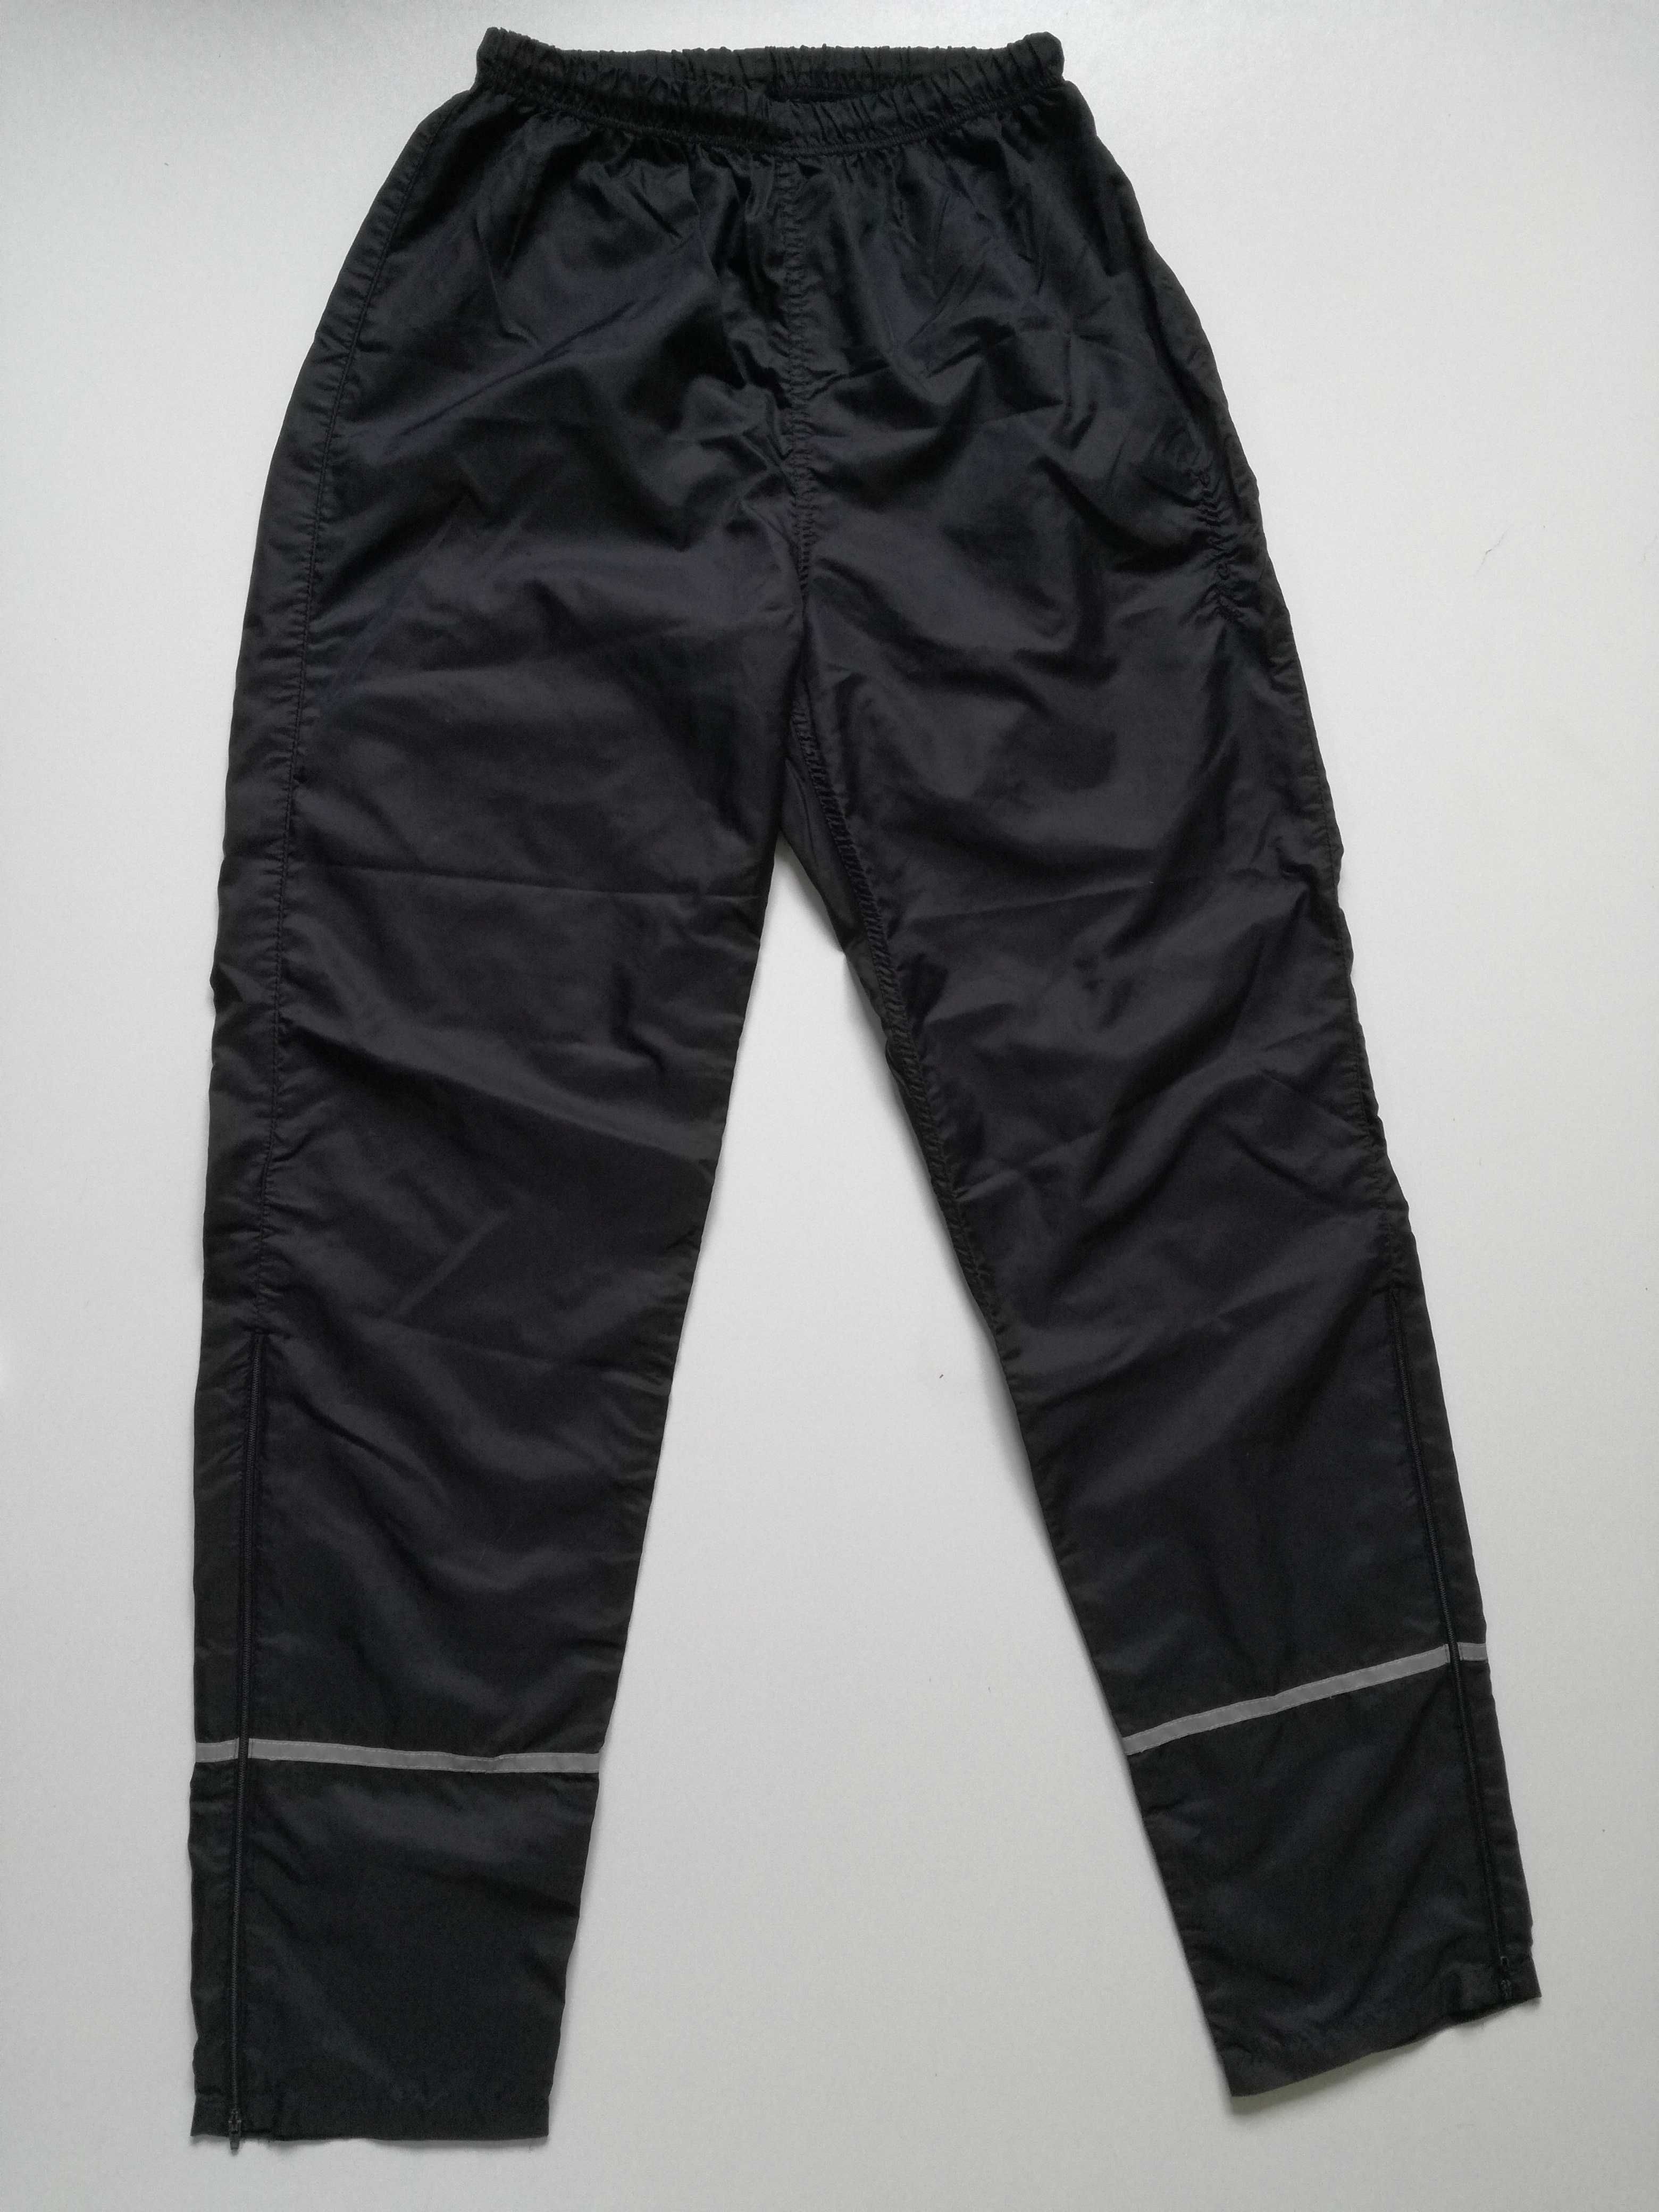 Spodnie sportowe cieniutkie z odblaskami do biegania M/L